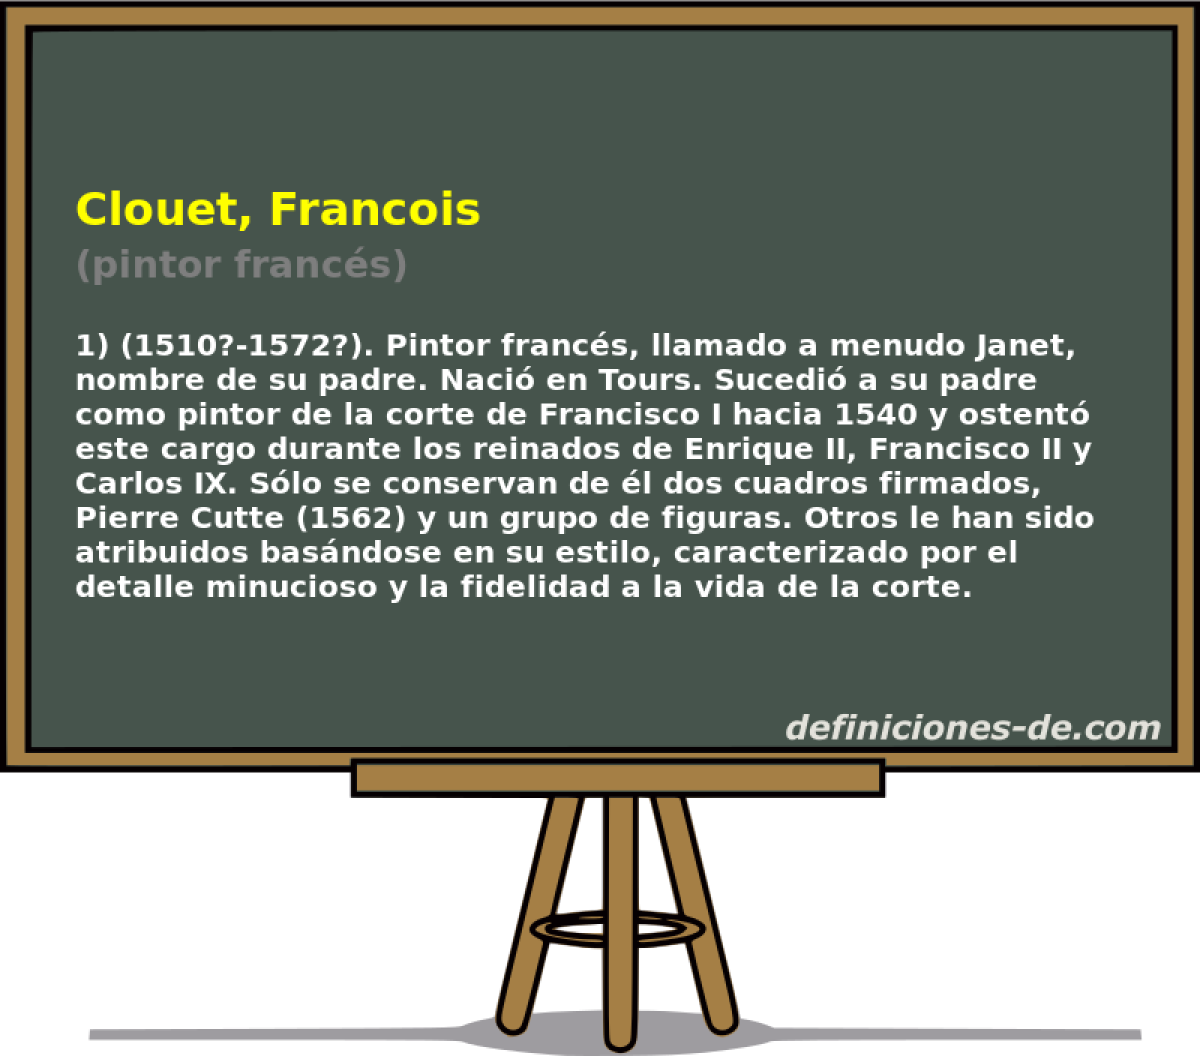 Clouet, Francois (pintor francs)